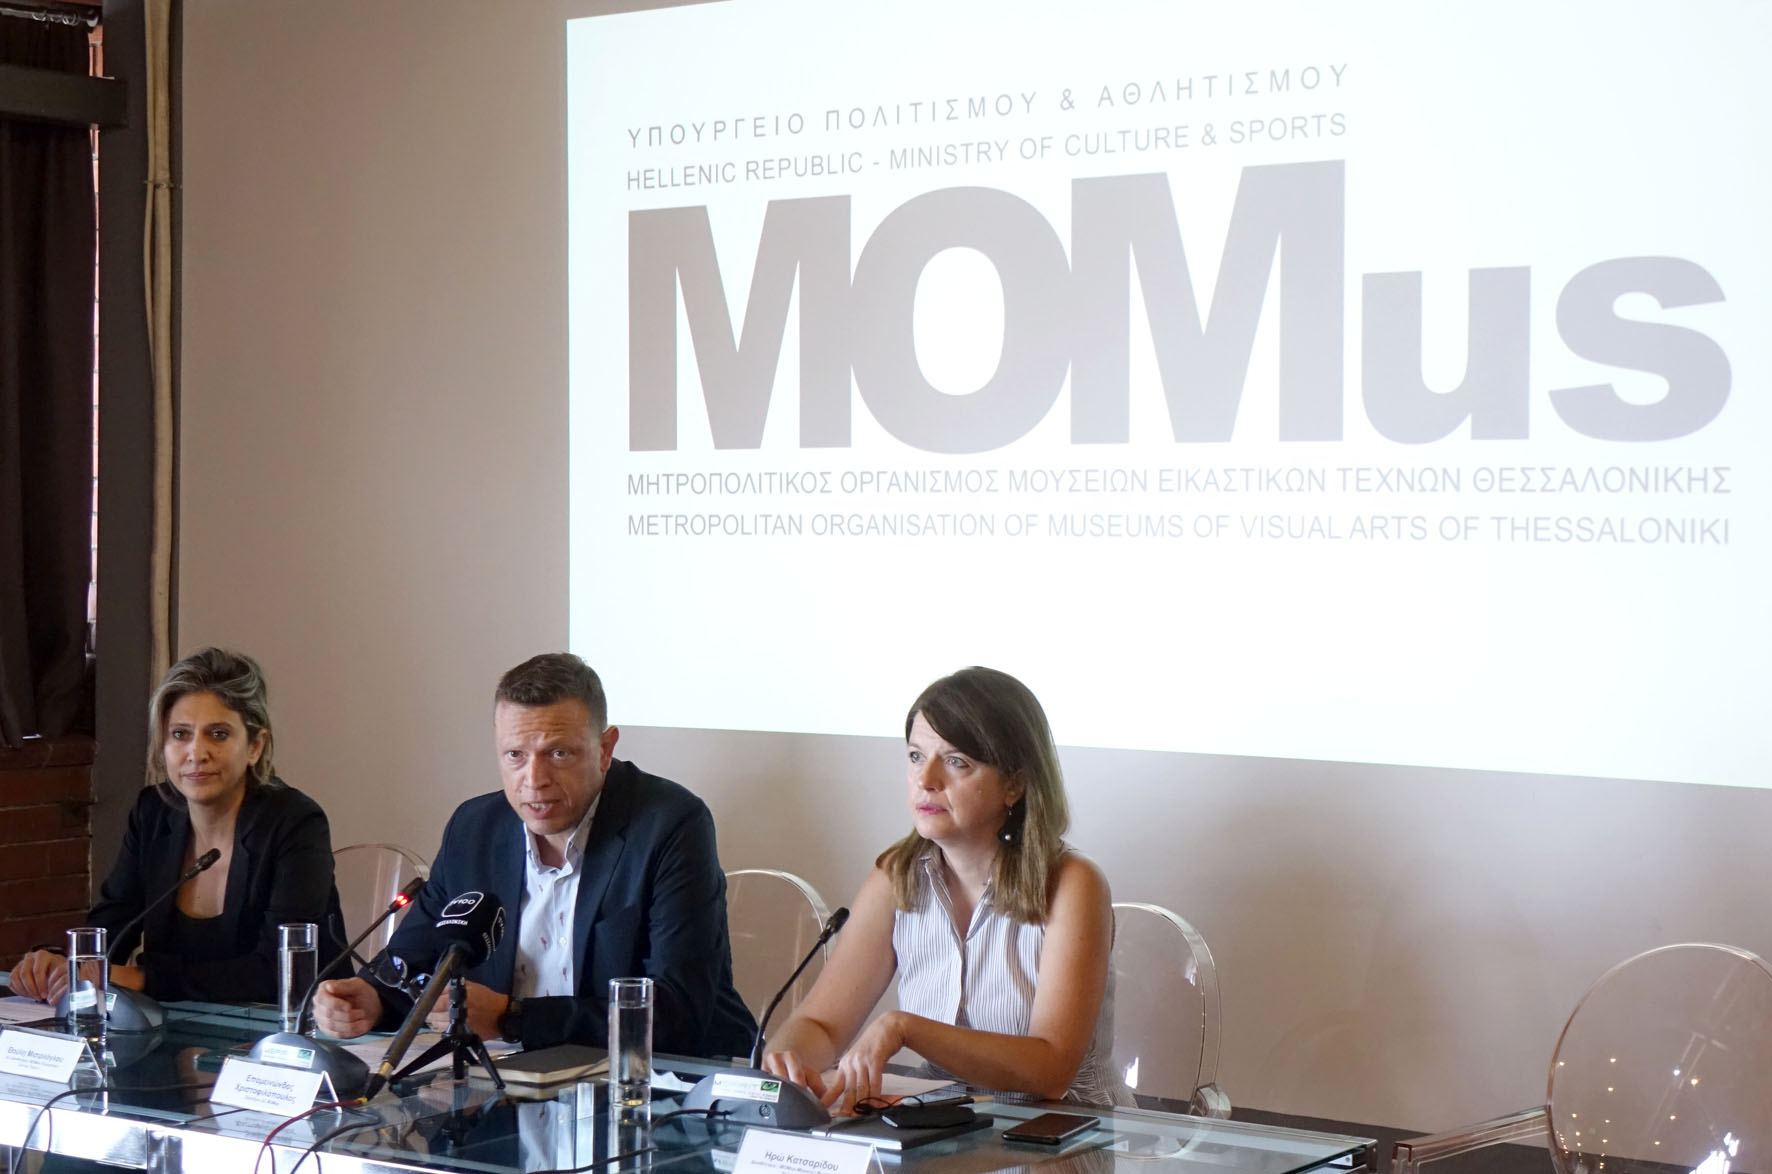 άποψη του πάνελ (από αριστερά προς δεξιά)  Θούλη Μισιρλόγλου, αν. διευθύντρια του MOMus-Πειραματικού Κέντρου Τεχνών & του MOMus-Μουσείου Σύγχρονης Τέχνης, Επαμεινώνδας Χριστοφιλόπουλος, Πρόεδρος ΔΣ του MOMus, Ηρώ Κατσαρίδου, διευθύντρια του MOMus-Μουσείου Φωτογραφίας Θεσσαλονίκης . Φωτ.: Νώντας Στυλιανίδης